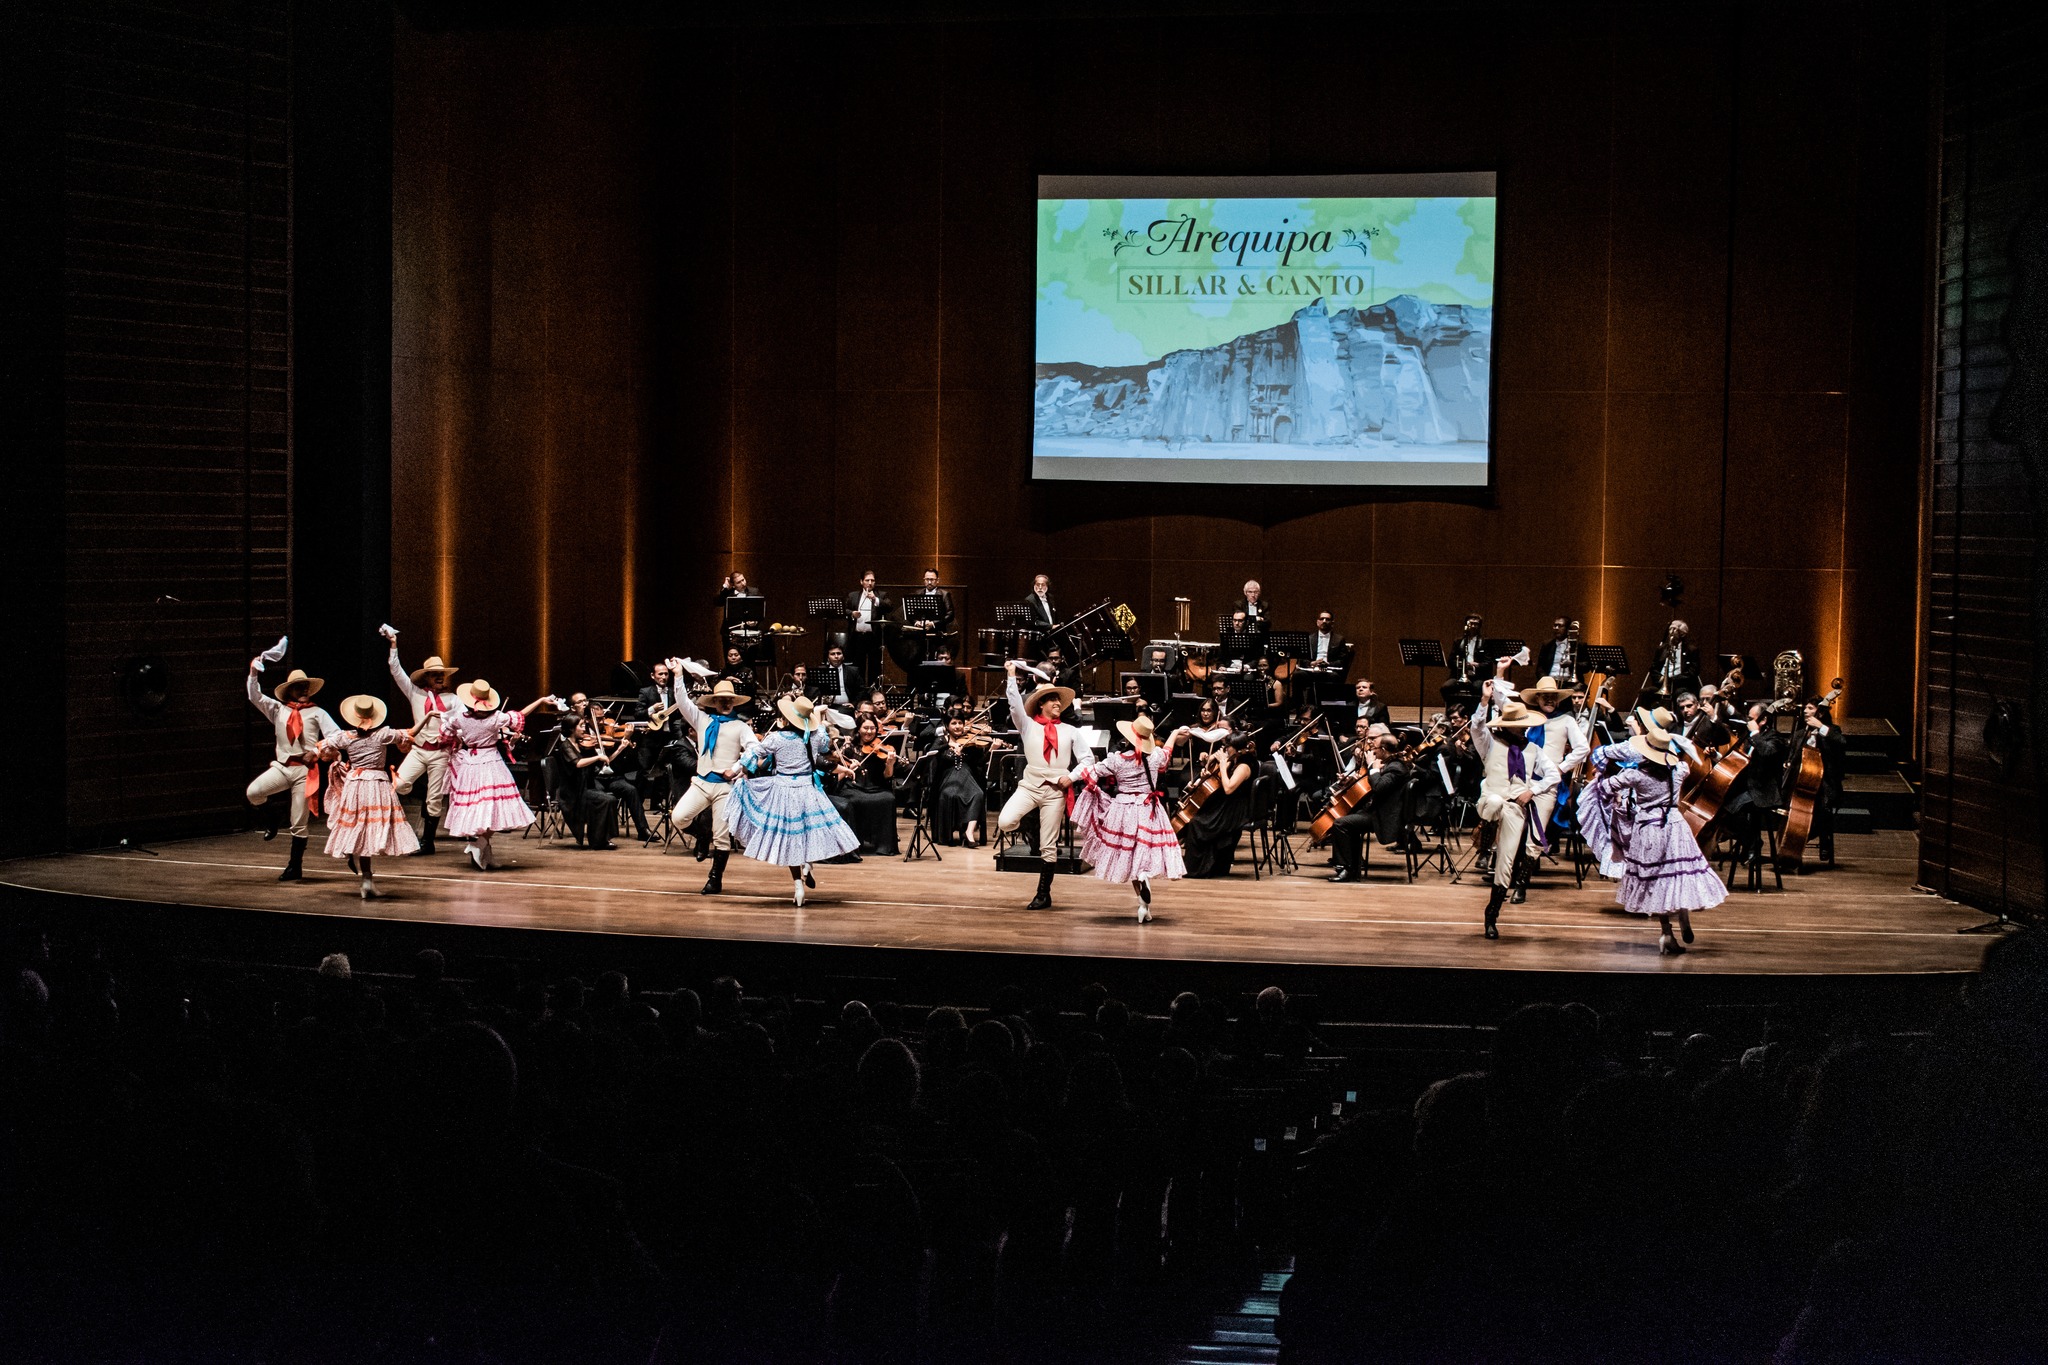 Orquesta Sinfónica Nacional del Perú rinde homenaje a Arequipa con su concierto “Arequipa: Sillar y Canto”